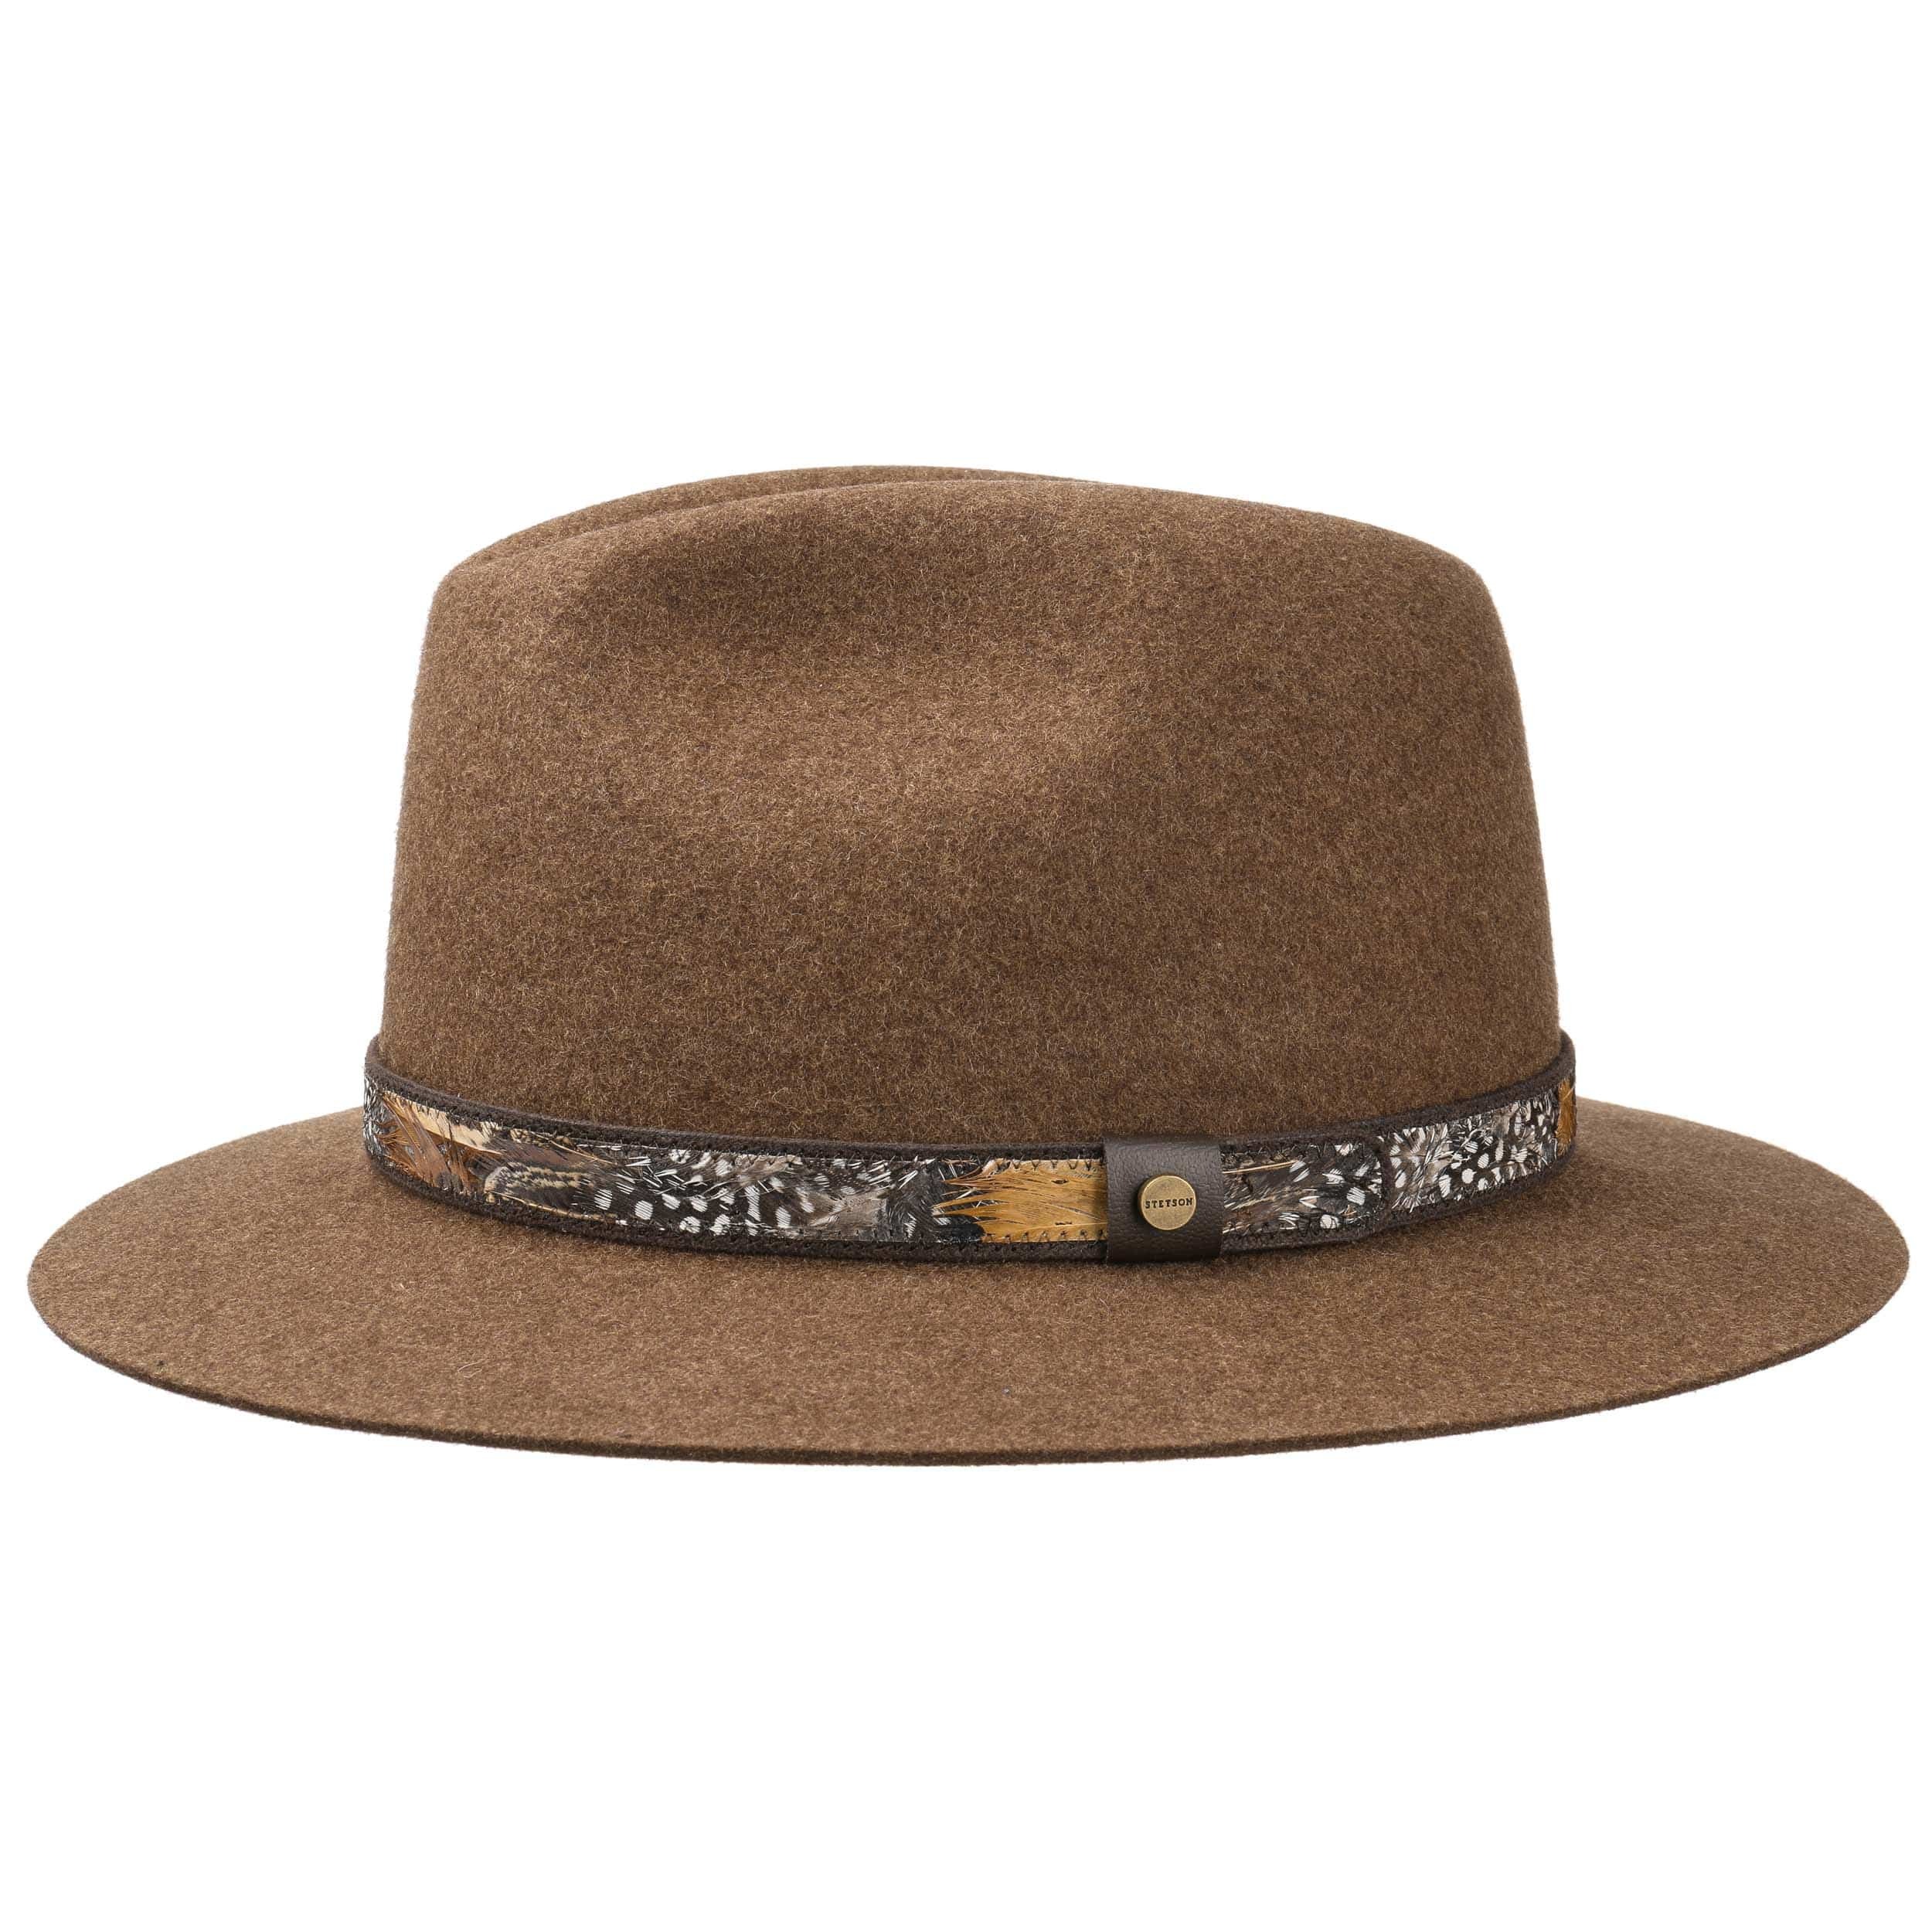 Feather Trim Traveller Felt Hat by Stetson, EUR 99,00 --> Hats, caps